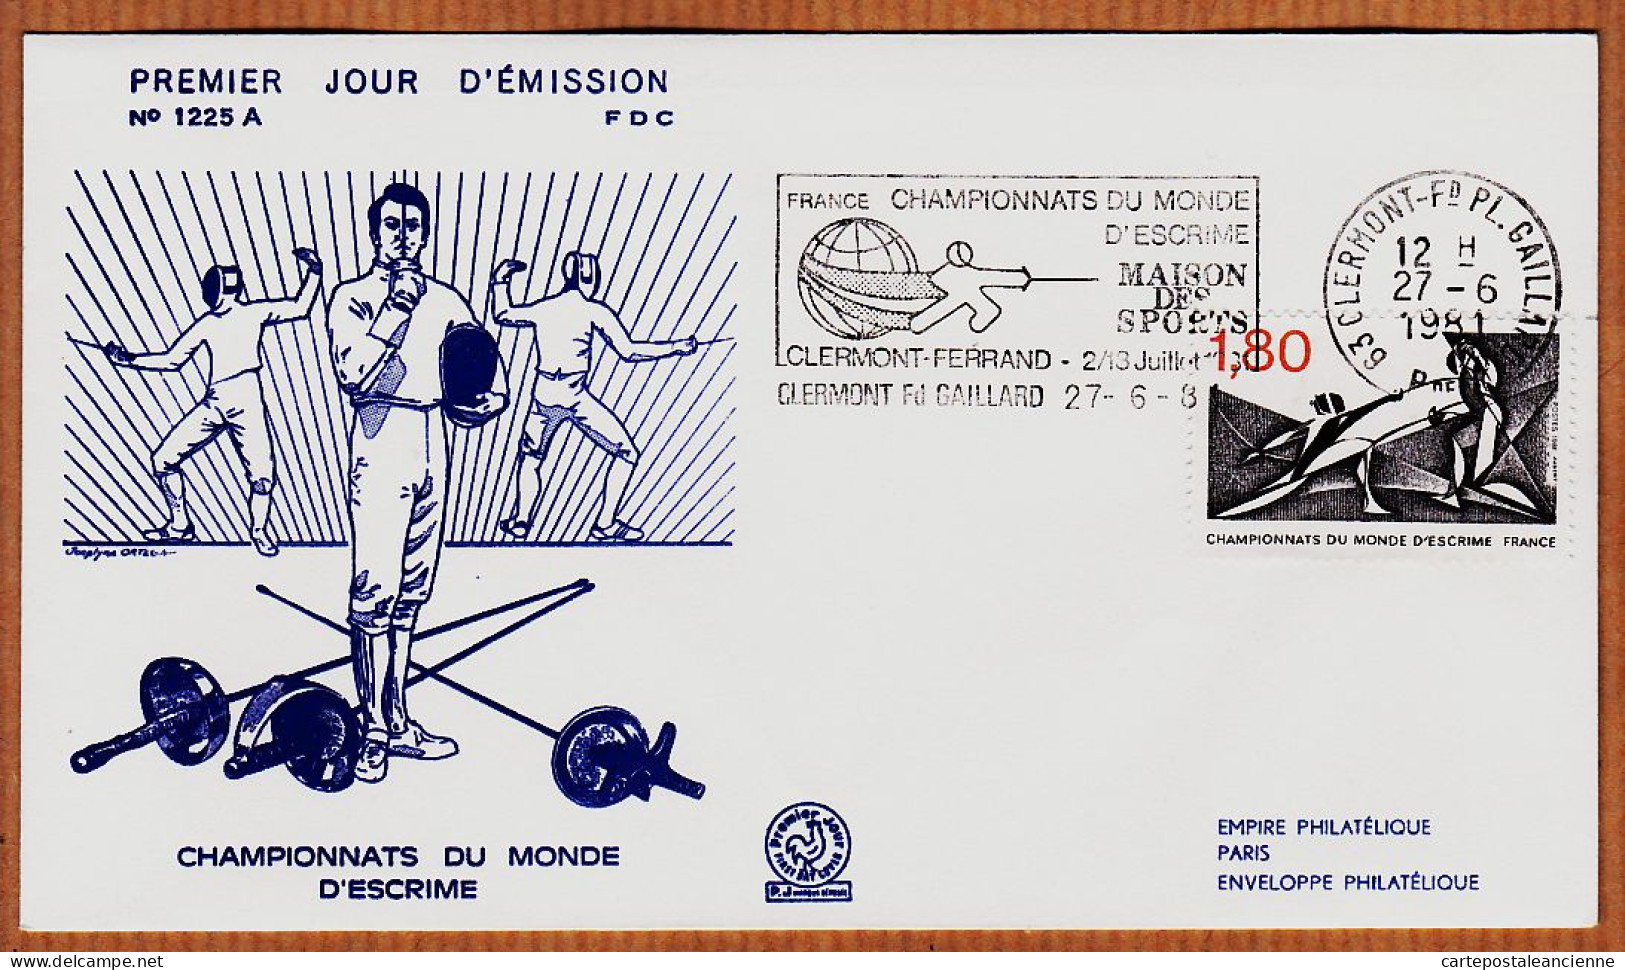 04765 / FDC CHAMPIONNATS Du MONDE D' ESCRIME 27 Juin 1981 Flamme CLERMONT-FERRAND Premier Jour Emission 1225 A - Fencing